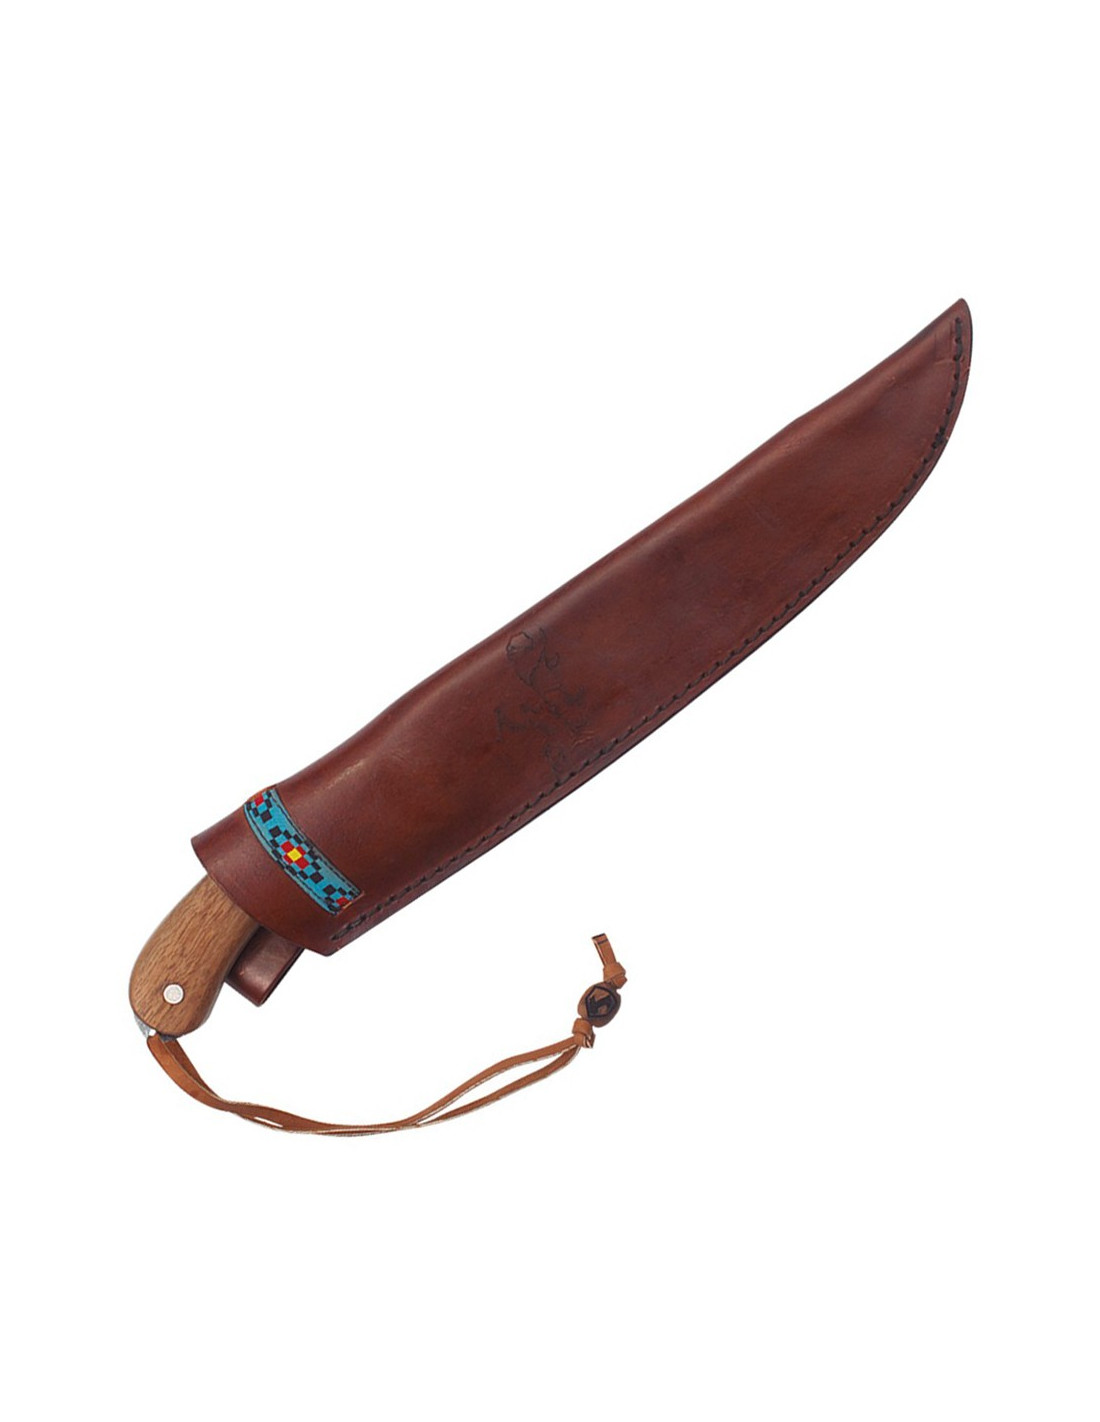 Machete cortacañas SCK con funda (49 cm.) ⚔️ Tienda-Medieval